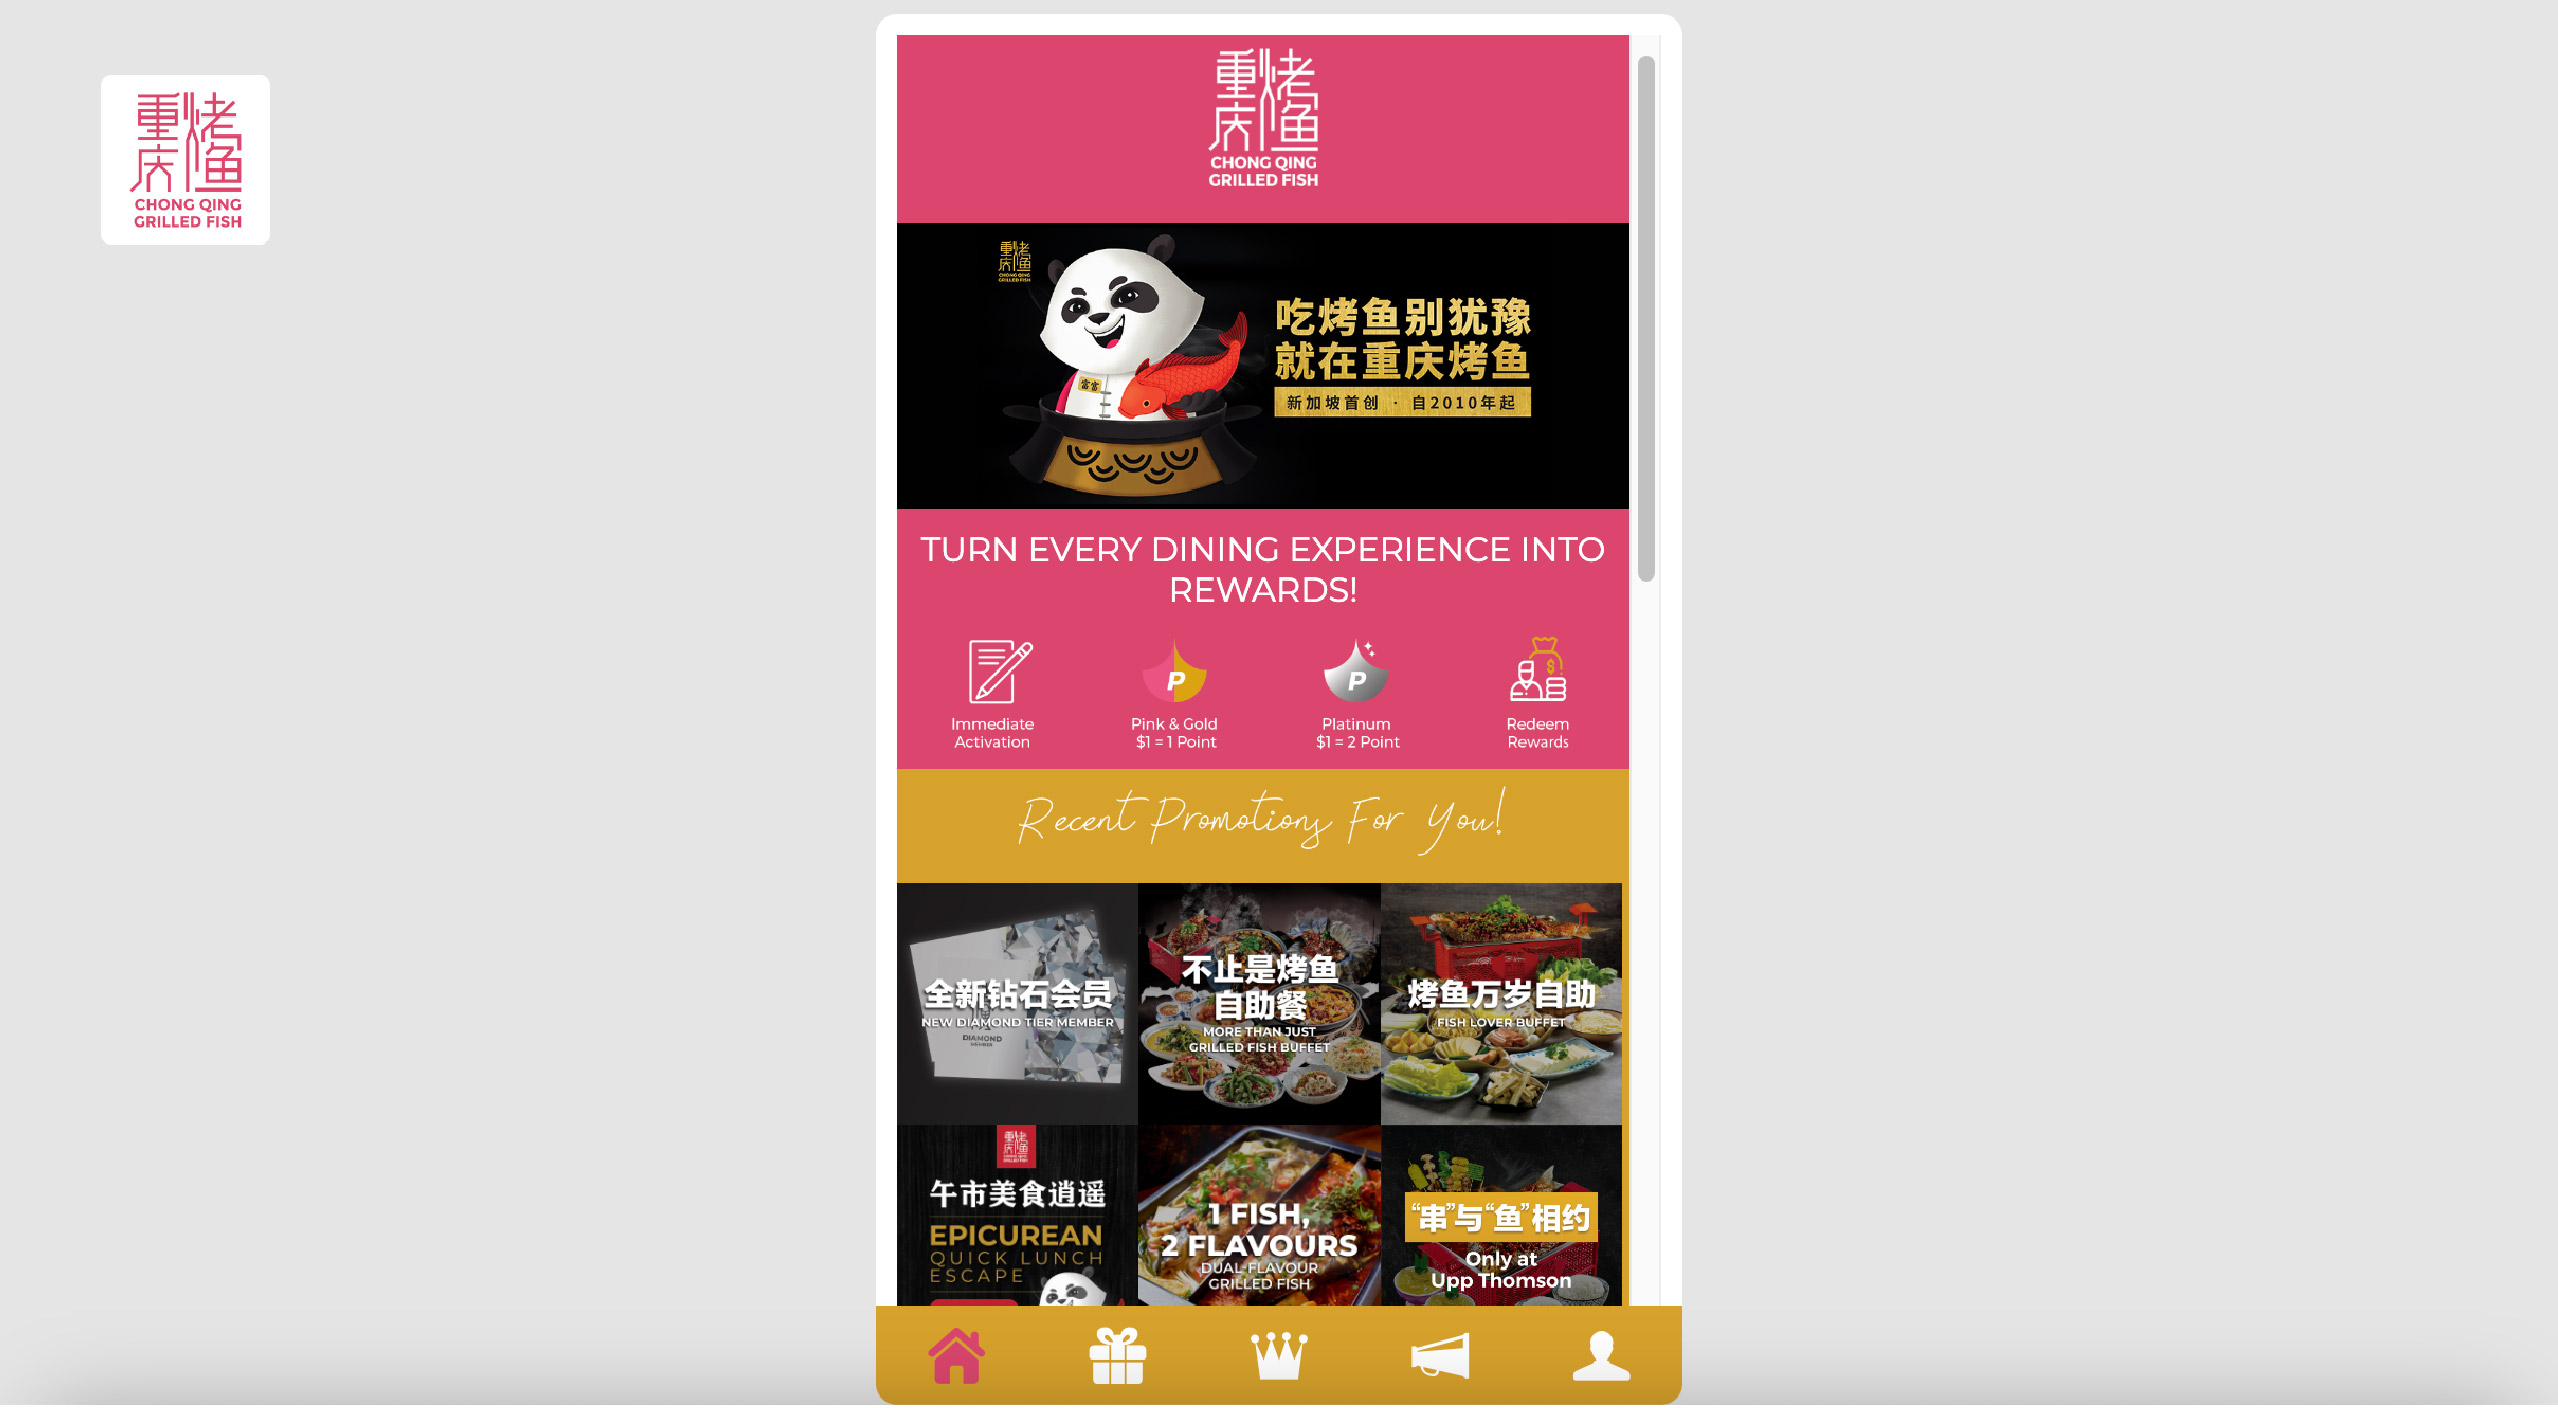 Chong Qing Grilled Fish_Customer Portal